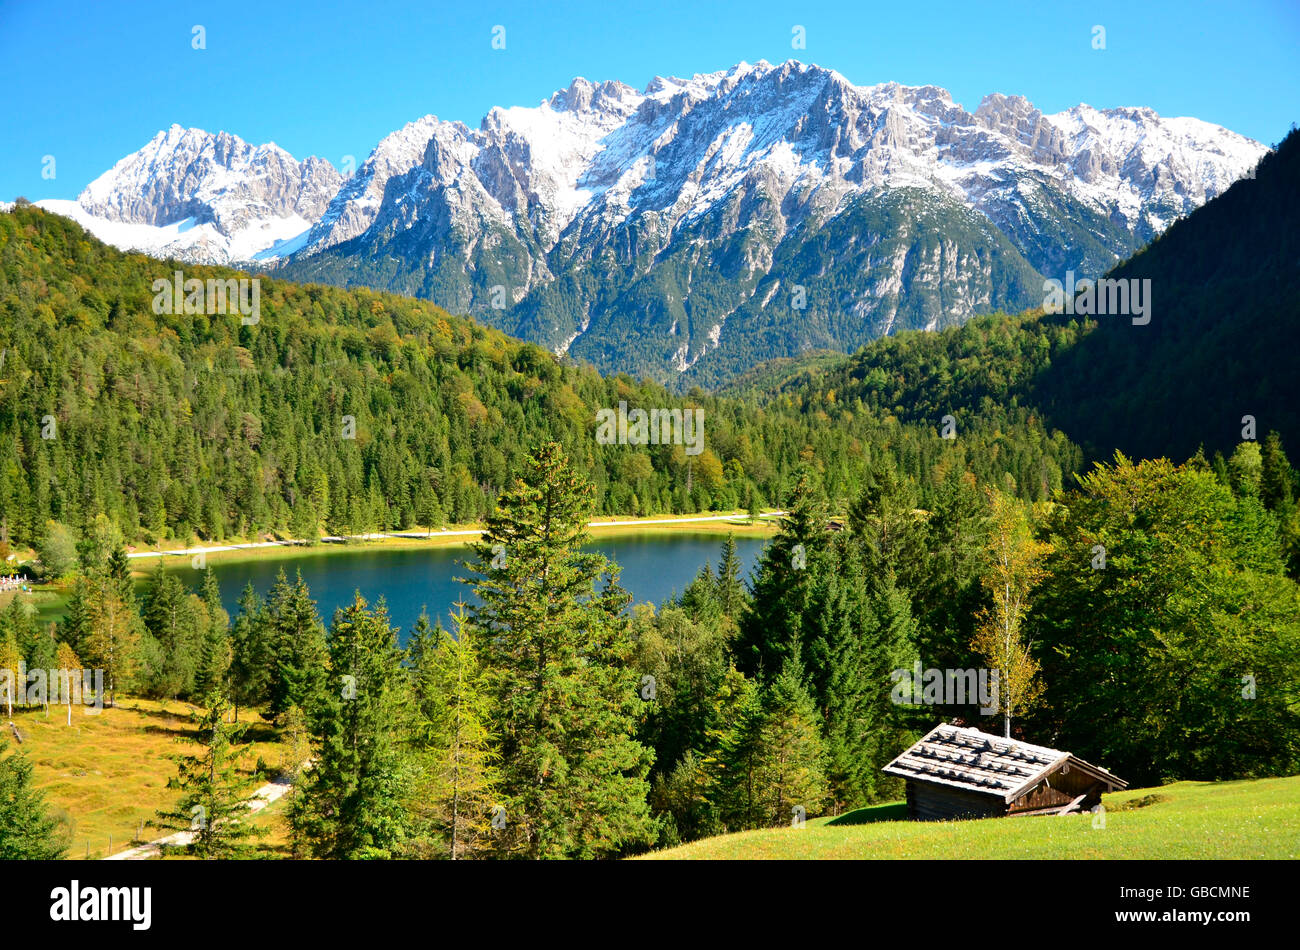 Bergsee, Karwendelgebirge, Ferchensee, Isartal, Oberbayern, Deutschland Banque D'Images